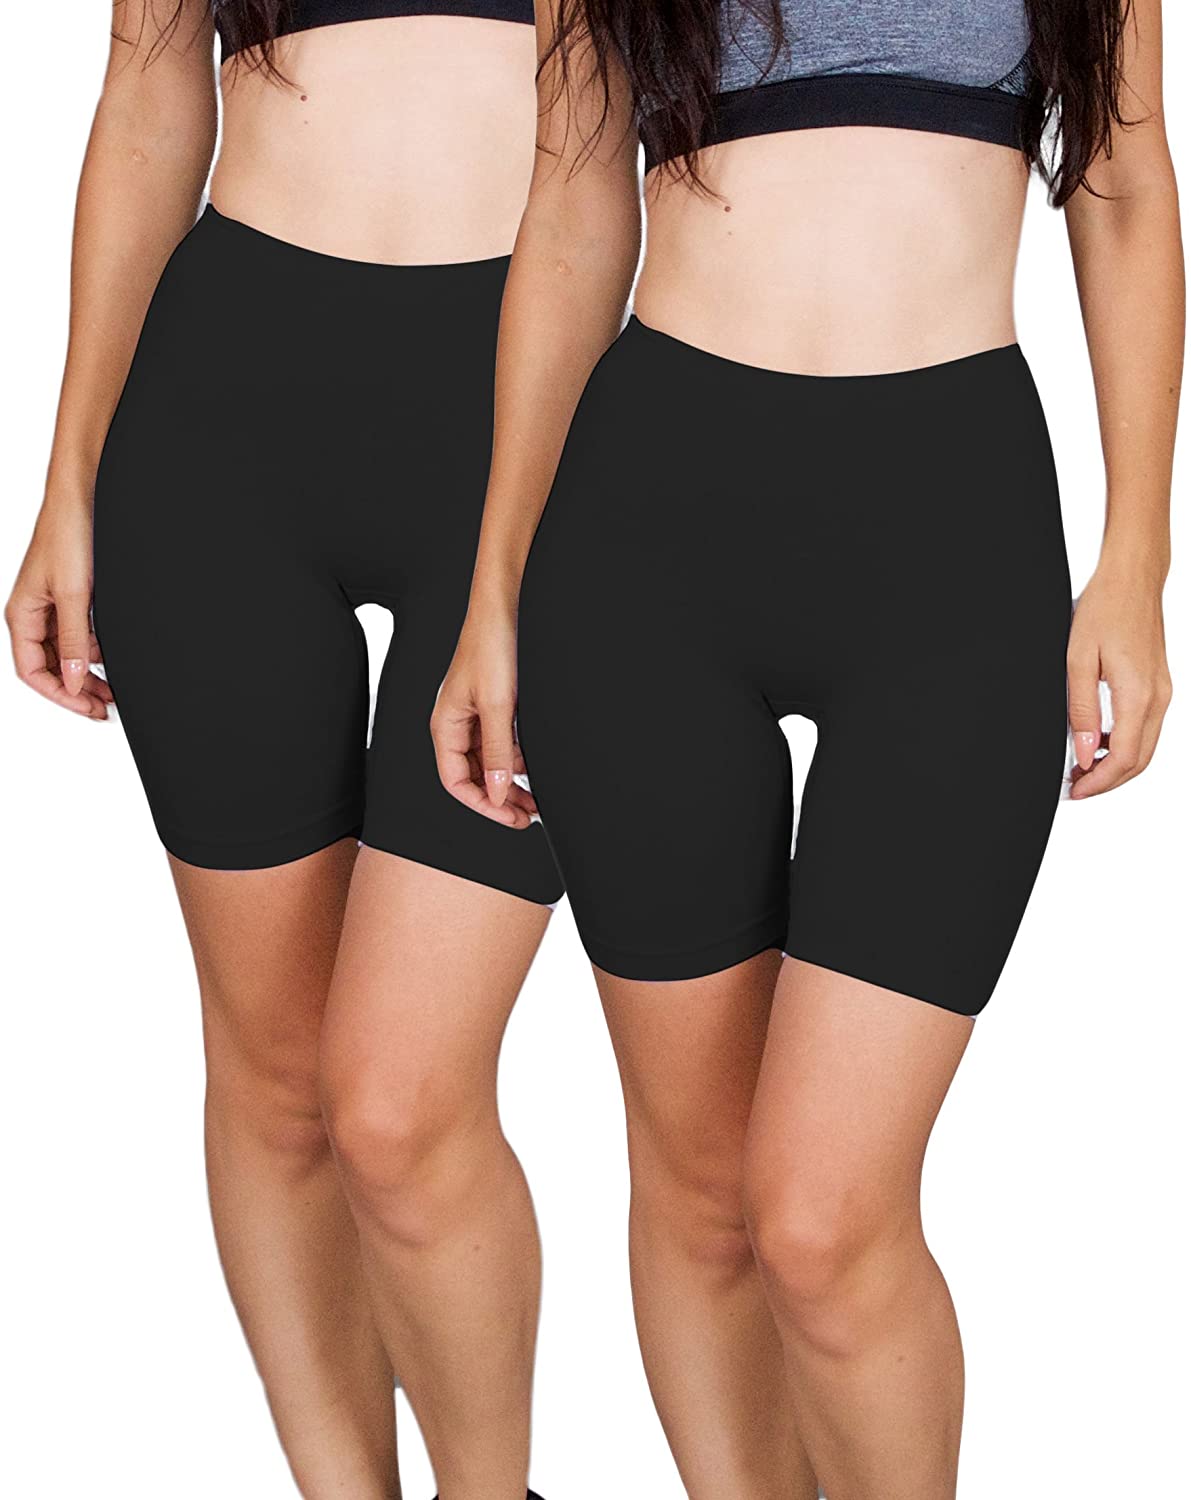 Emprella 5 Pack Slip Shorts for Under Dresses, Women's Seamless Bike Short